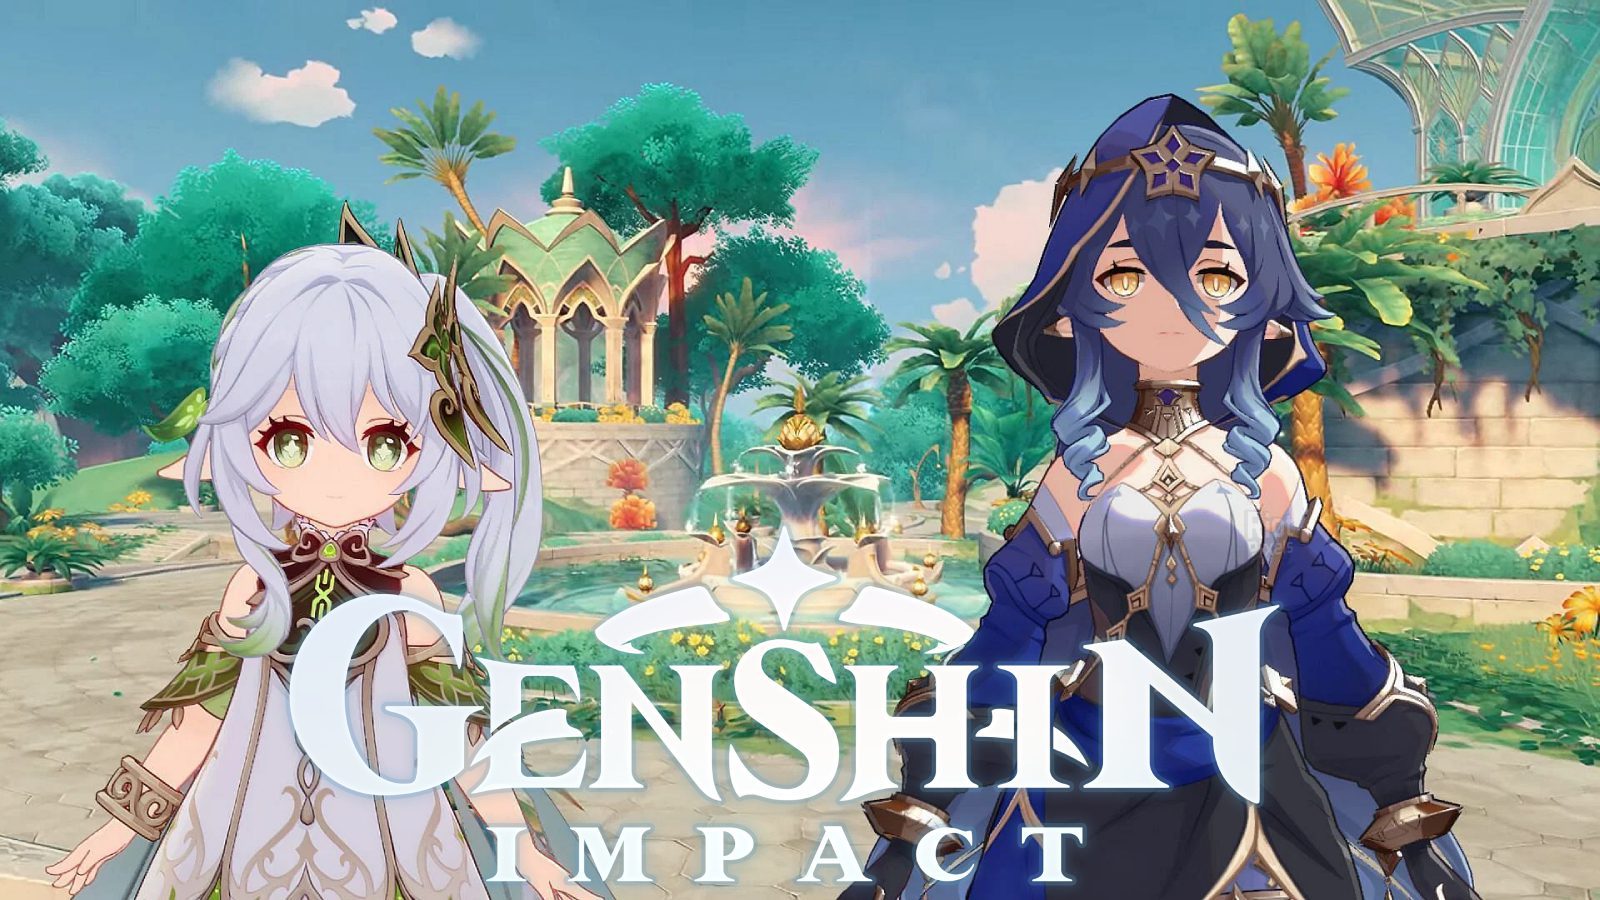 Коды активации Genshin Impact 3.2 Livestream предлагают бесплатные награды